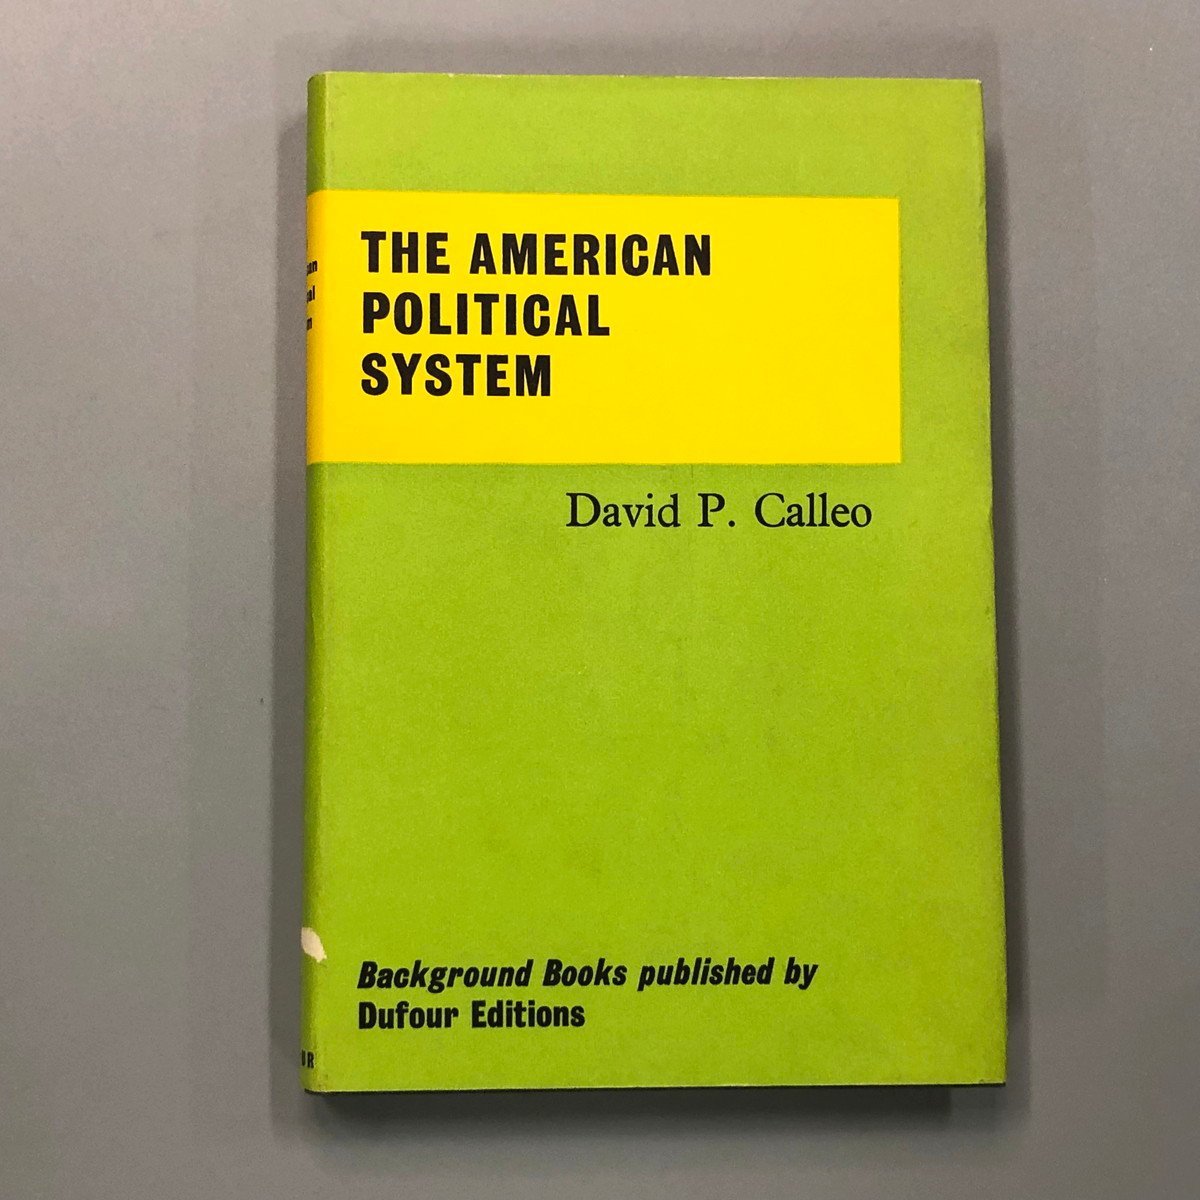 데이비드 P. 칼레오(David P. Caleo)의 미국 정치 시스템, 그림, 그림책, 수집, 그림책